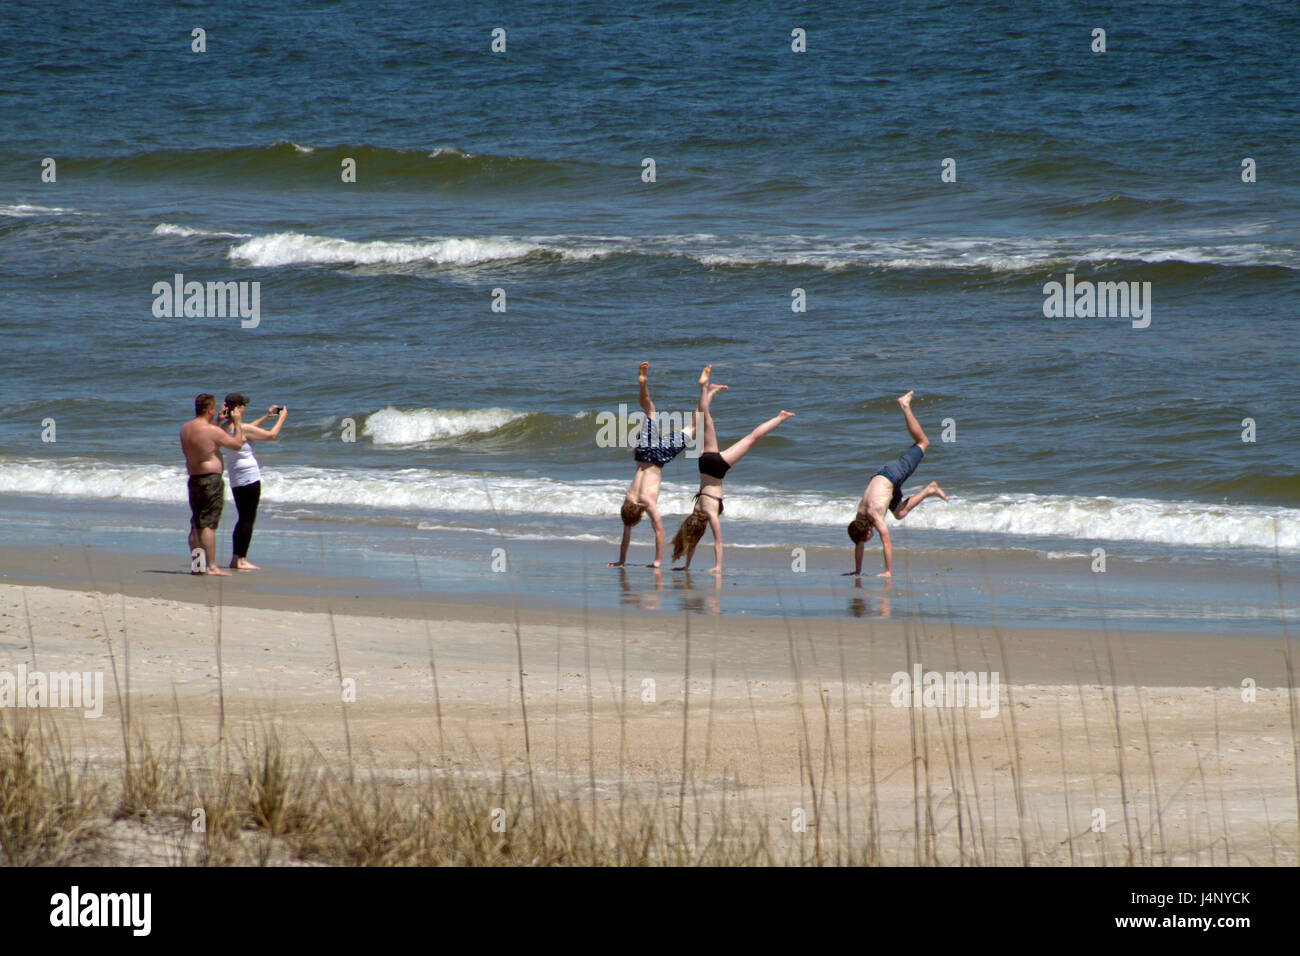 Carolina Beach, Carolina del Norte, EE.UU. - 11 de abril de 2017: tres jóvenes ¿athletic handstands en el agua de mar la marea entrante en una playa soleada Foto de stock